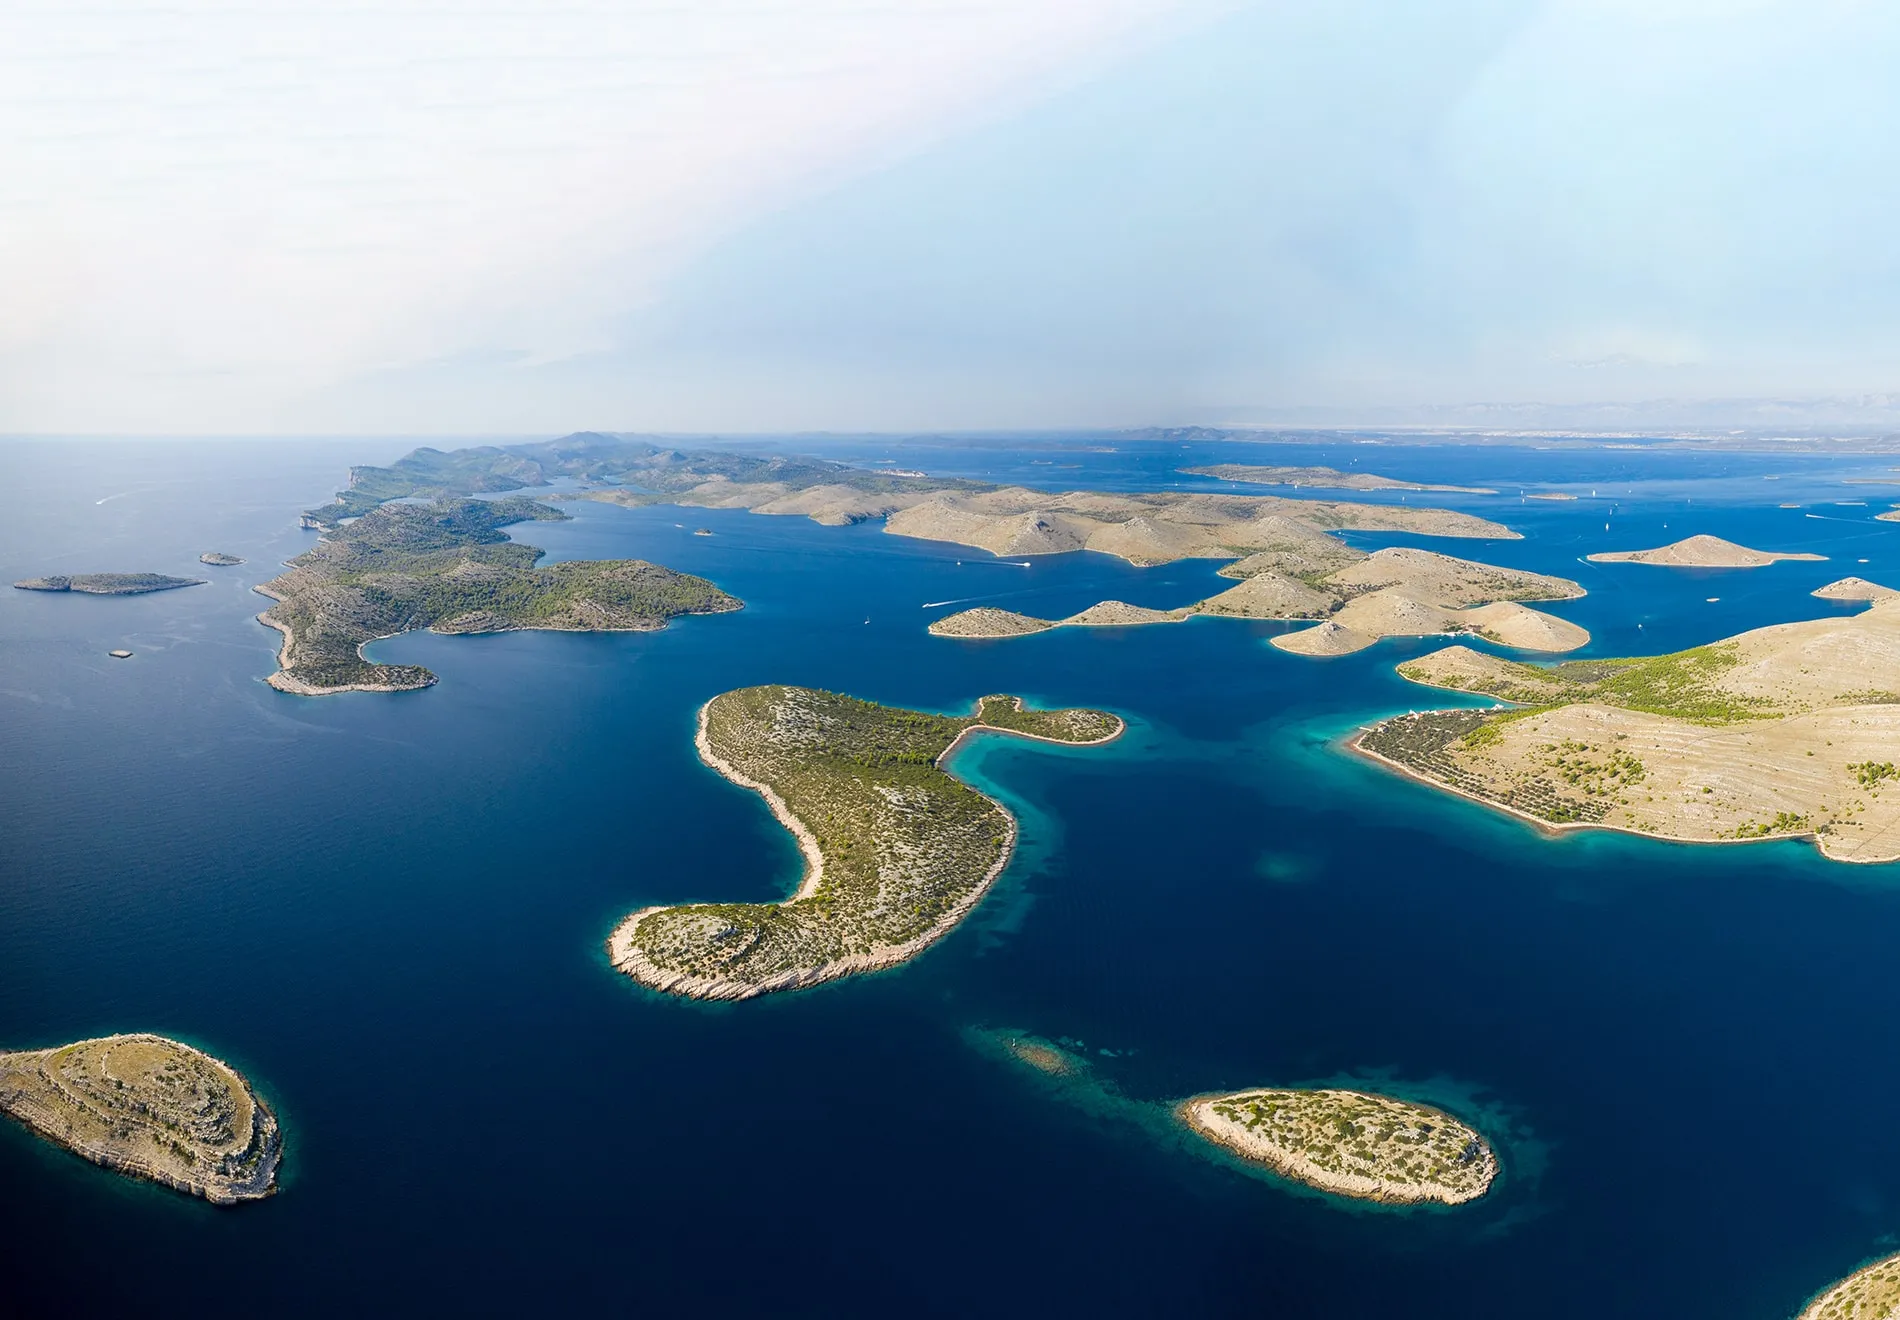 3. Sail the Kornati Islands